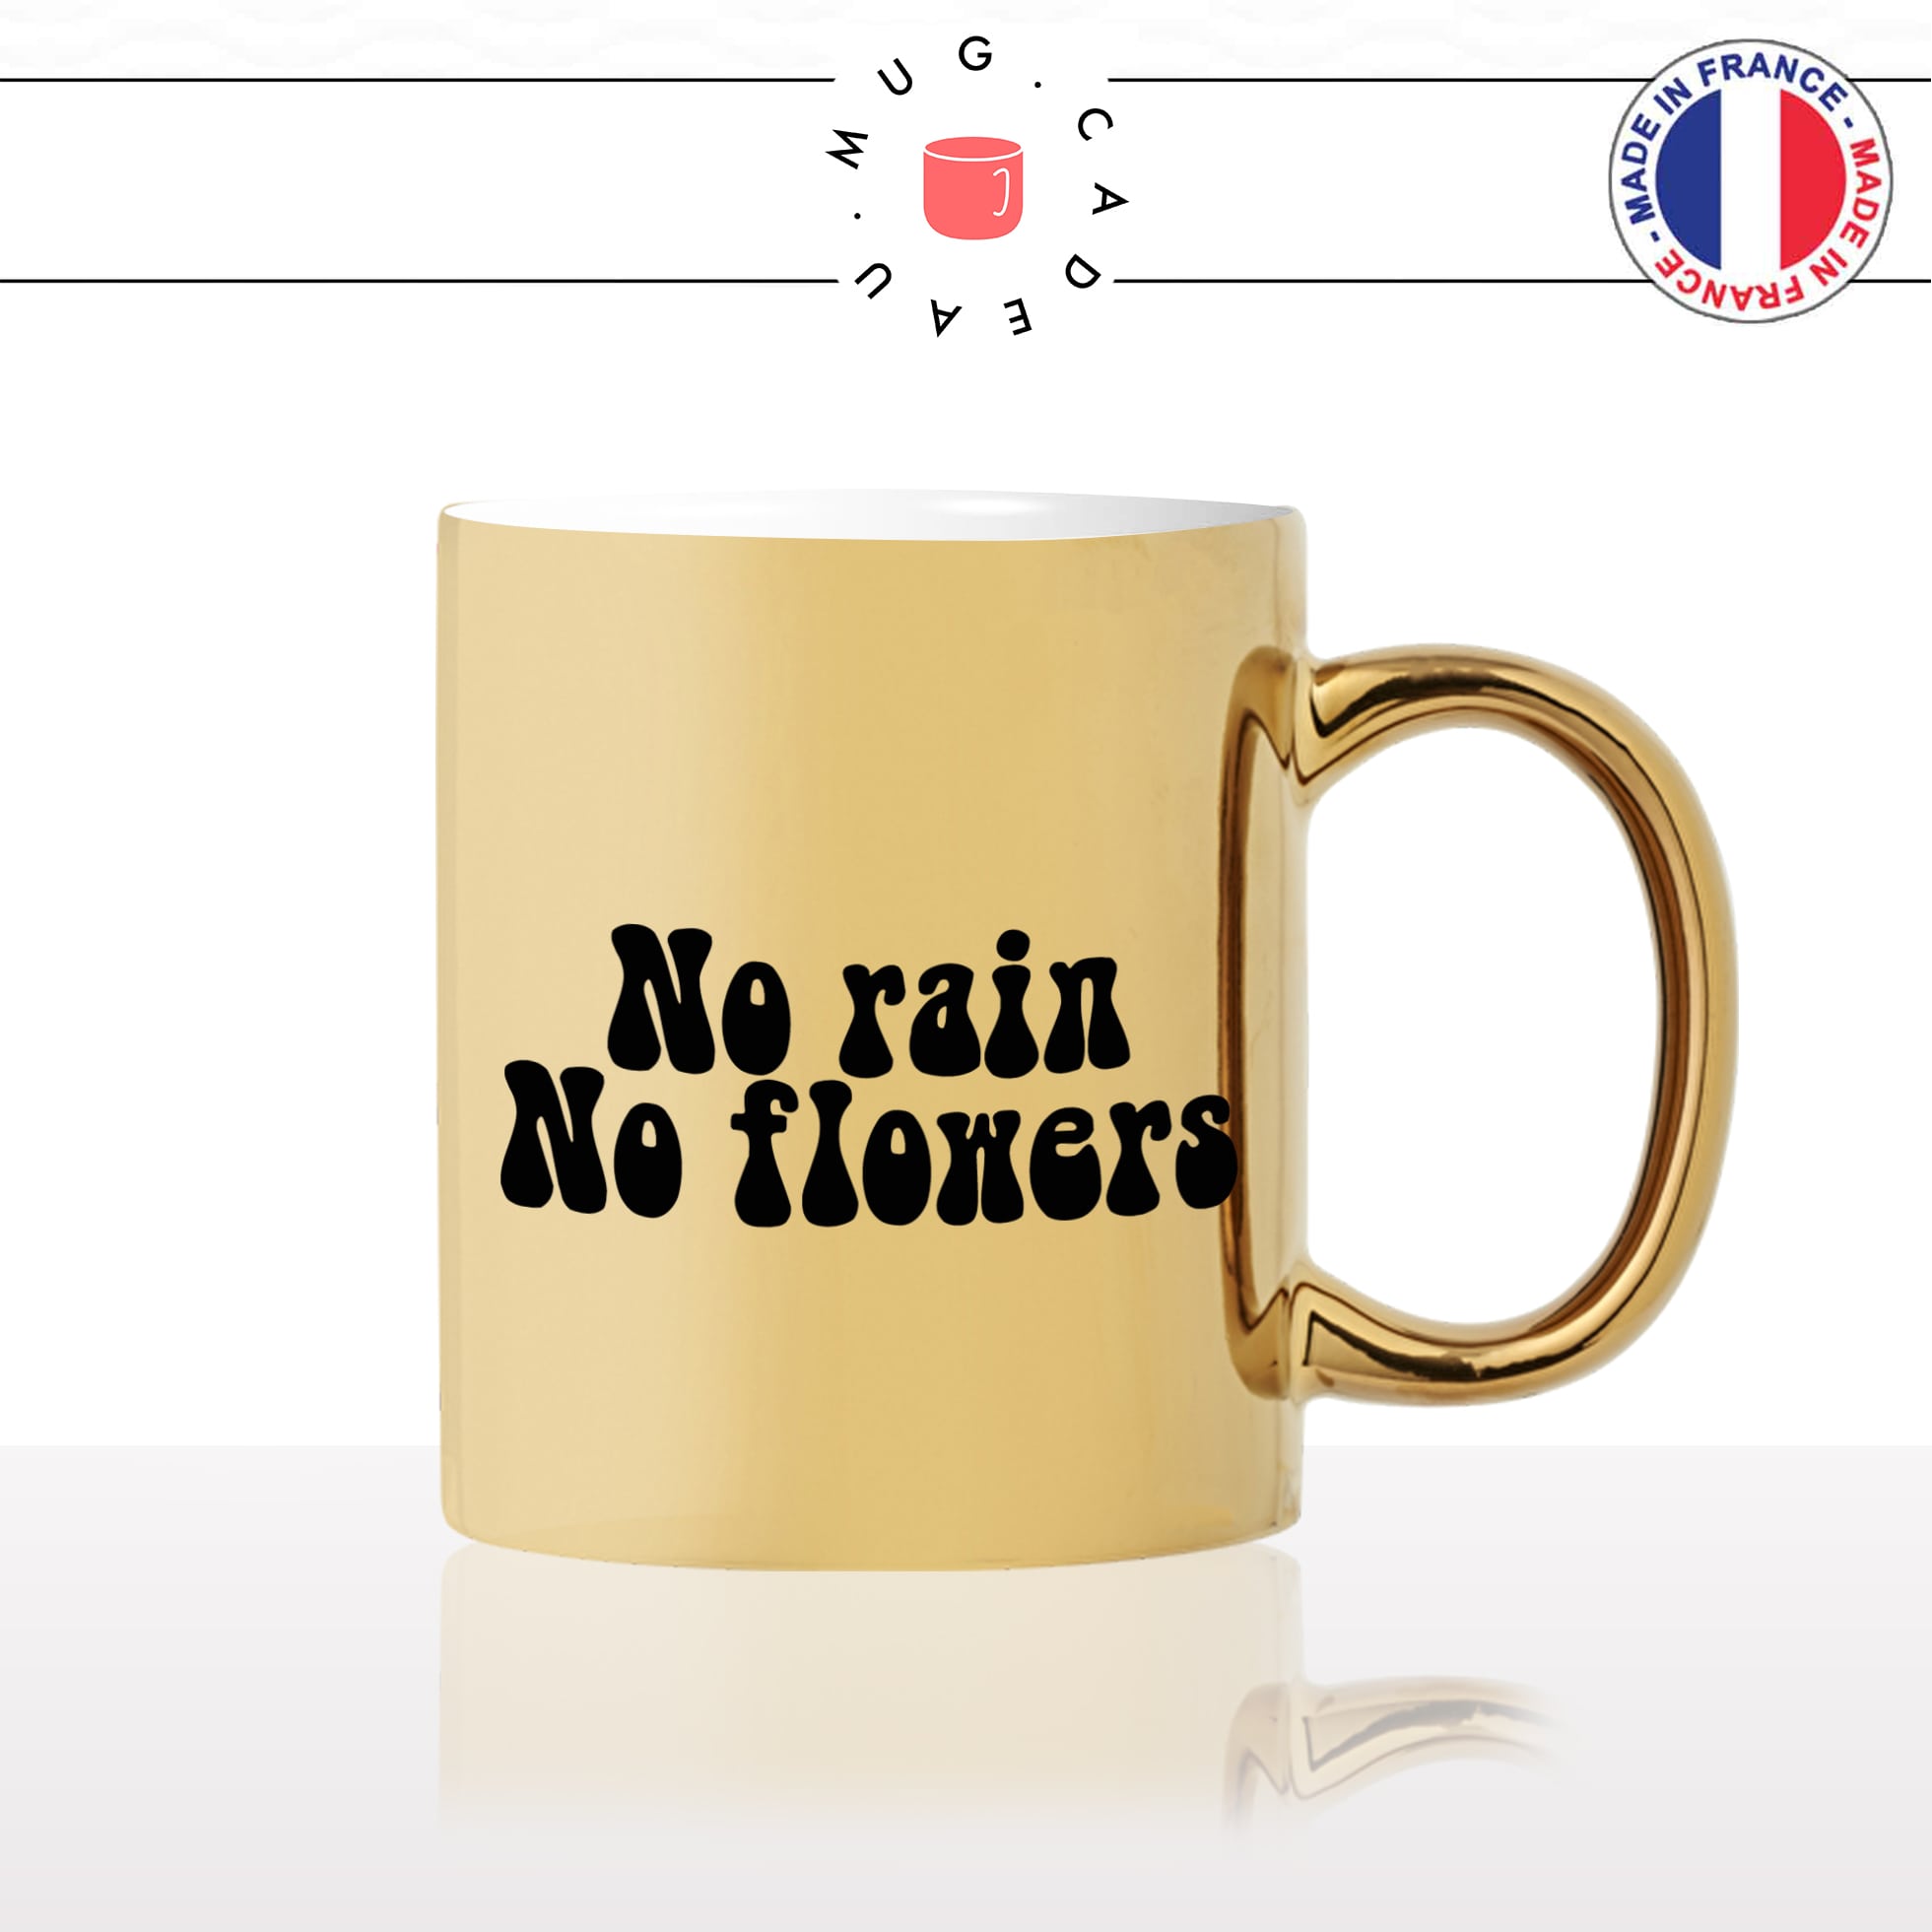 mug-tasse-doré-or-gold-citation-dicton-anglais-no-rain-no-flowers-pluie-fleurs-sagesse-humour-fun-idée-cadeau-personnalisé-café-thé2-min